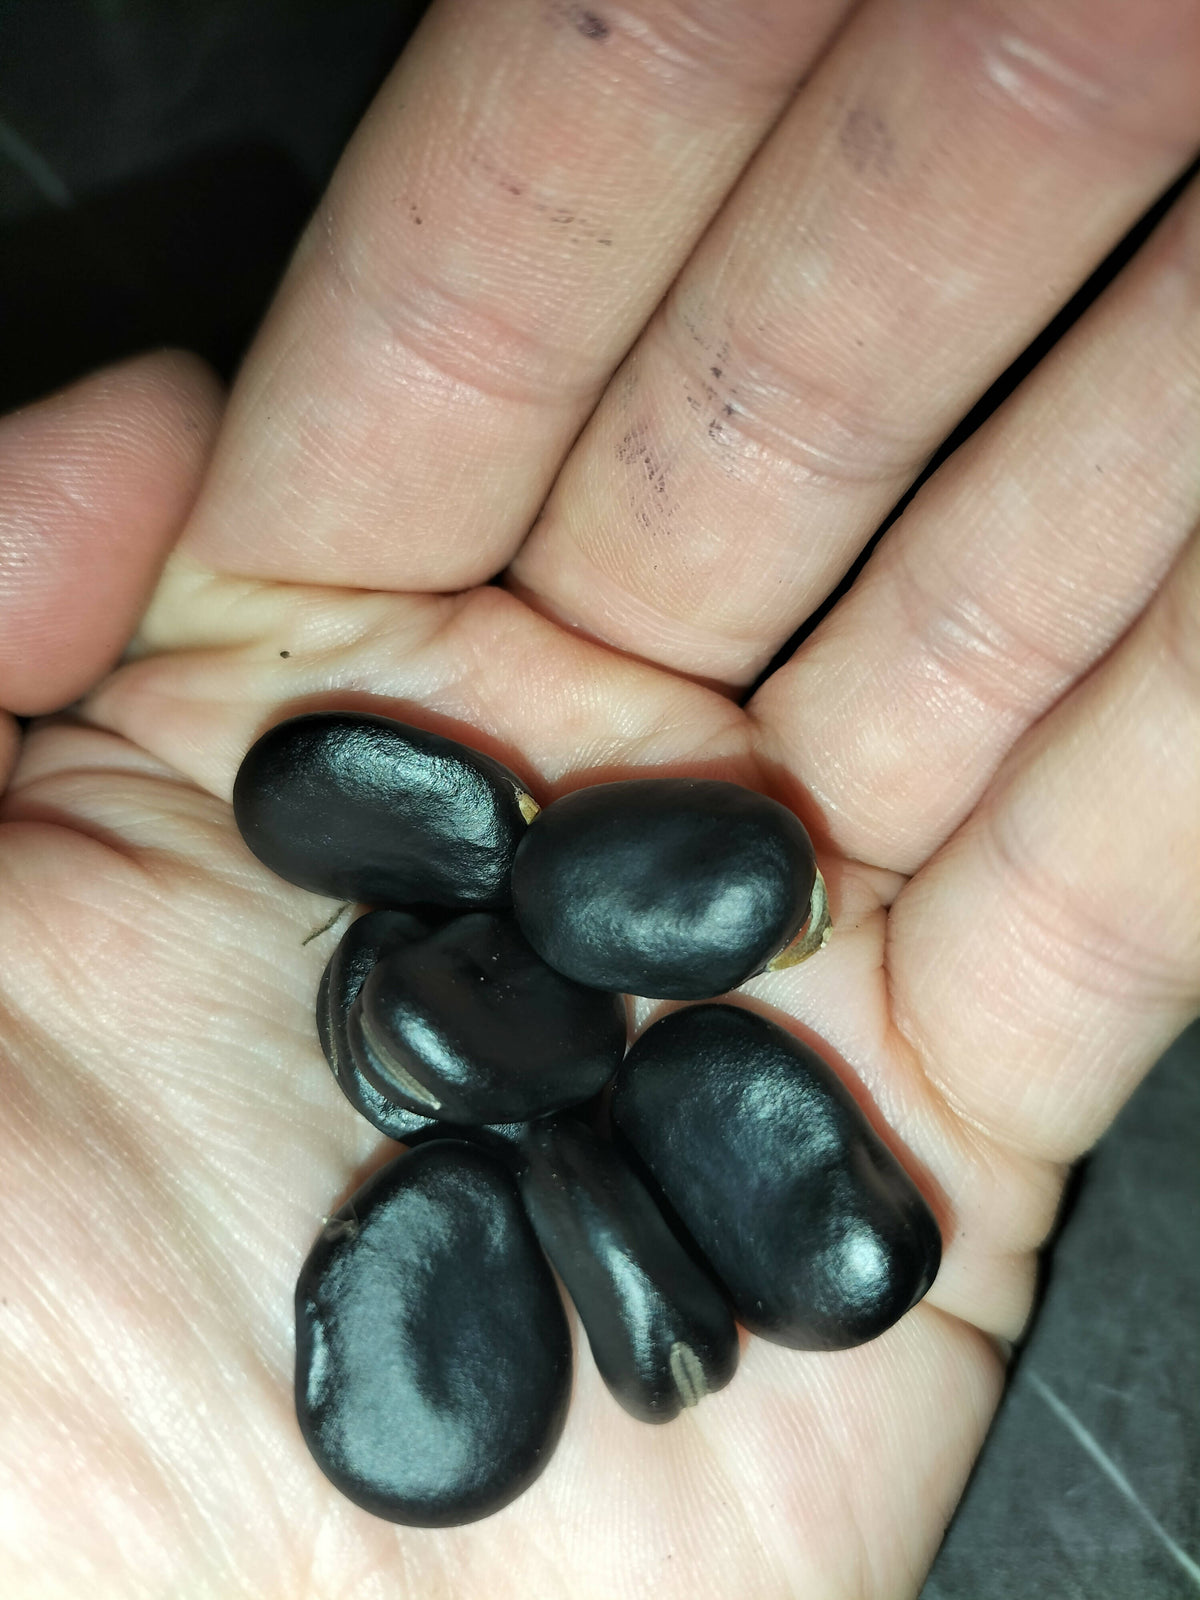 Black Russian broad bean